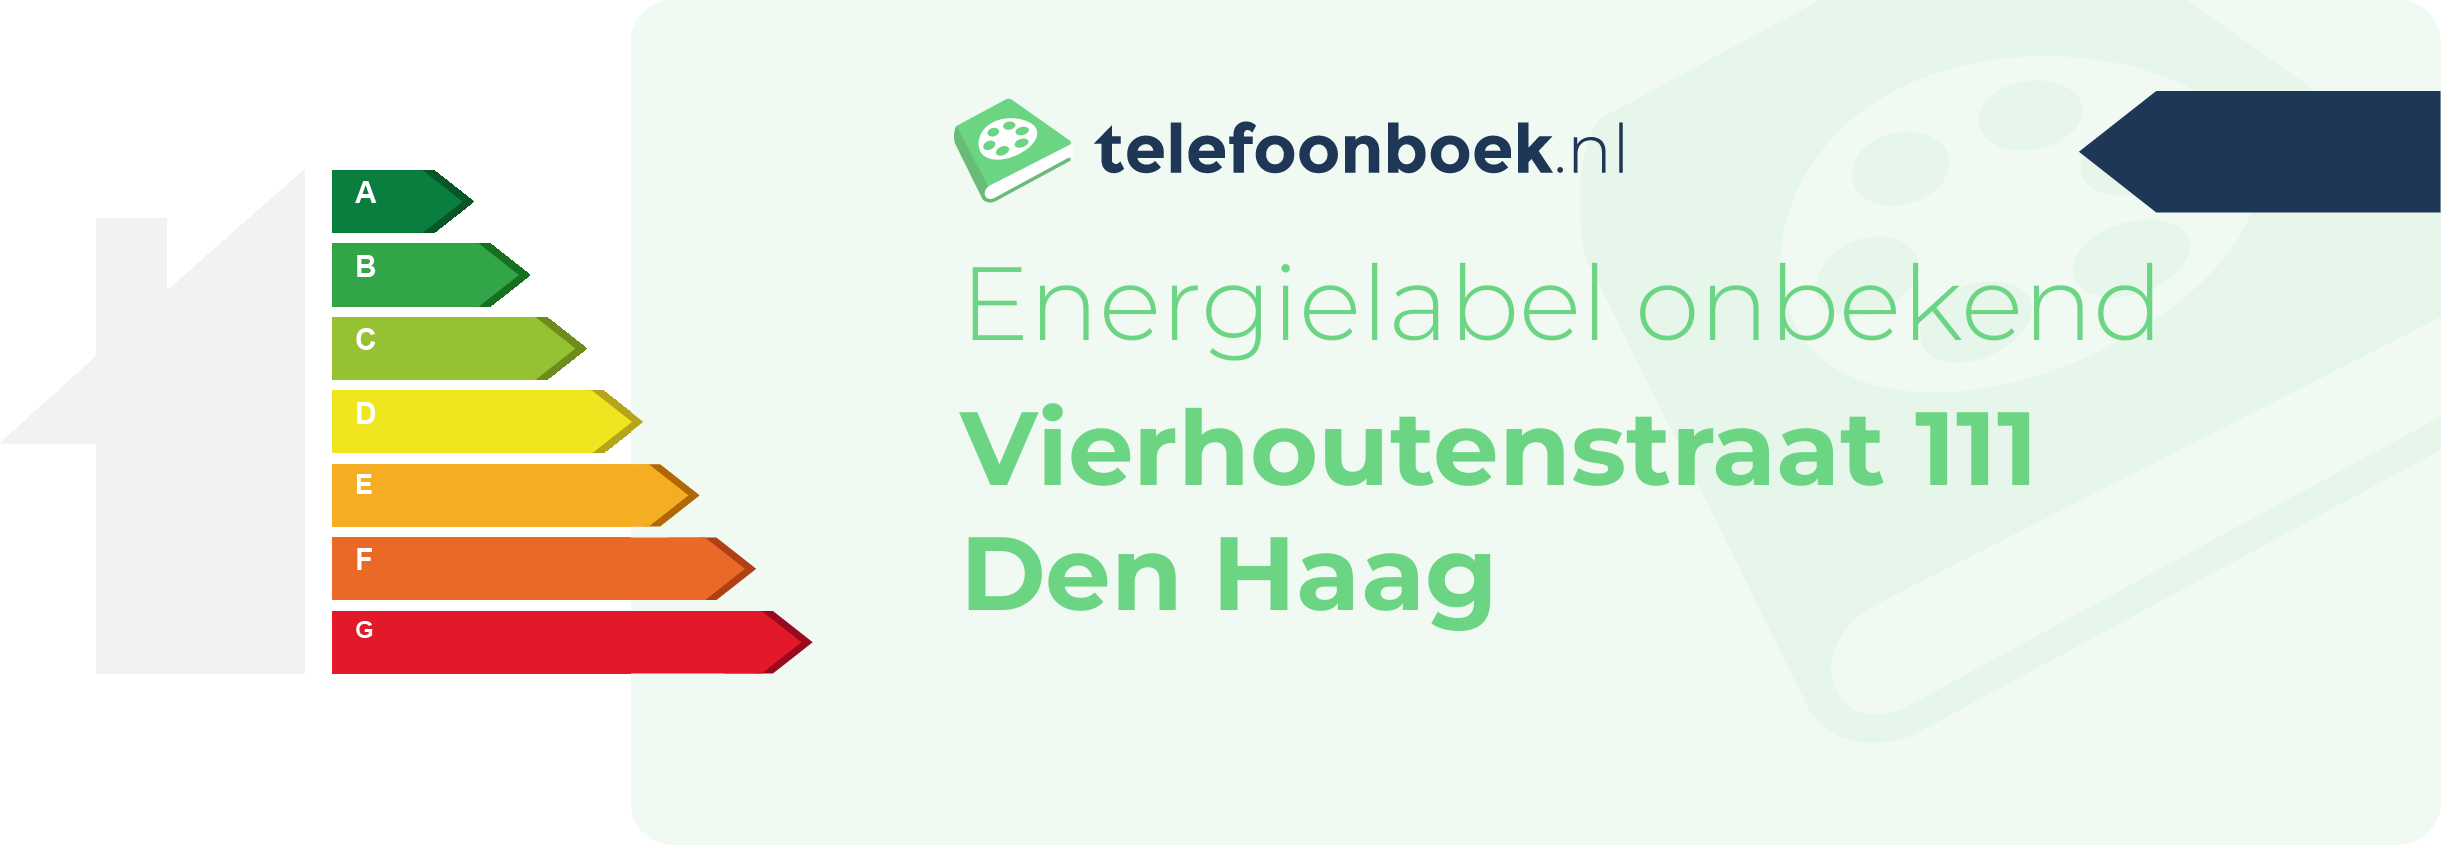 Energielabel Vierhoutenstraat 111 Den Haag